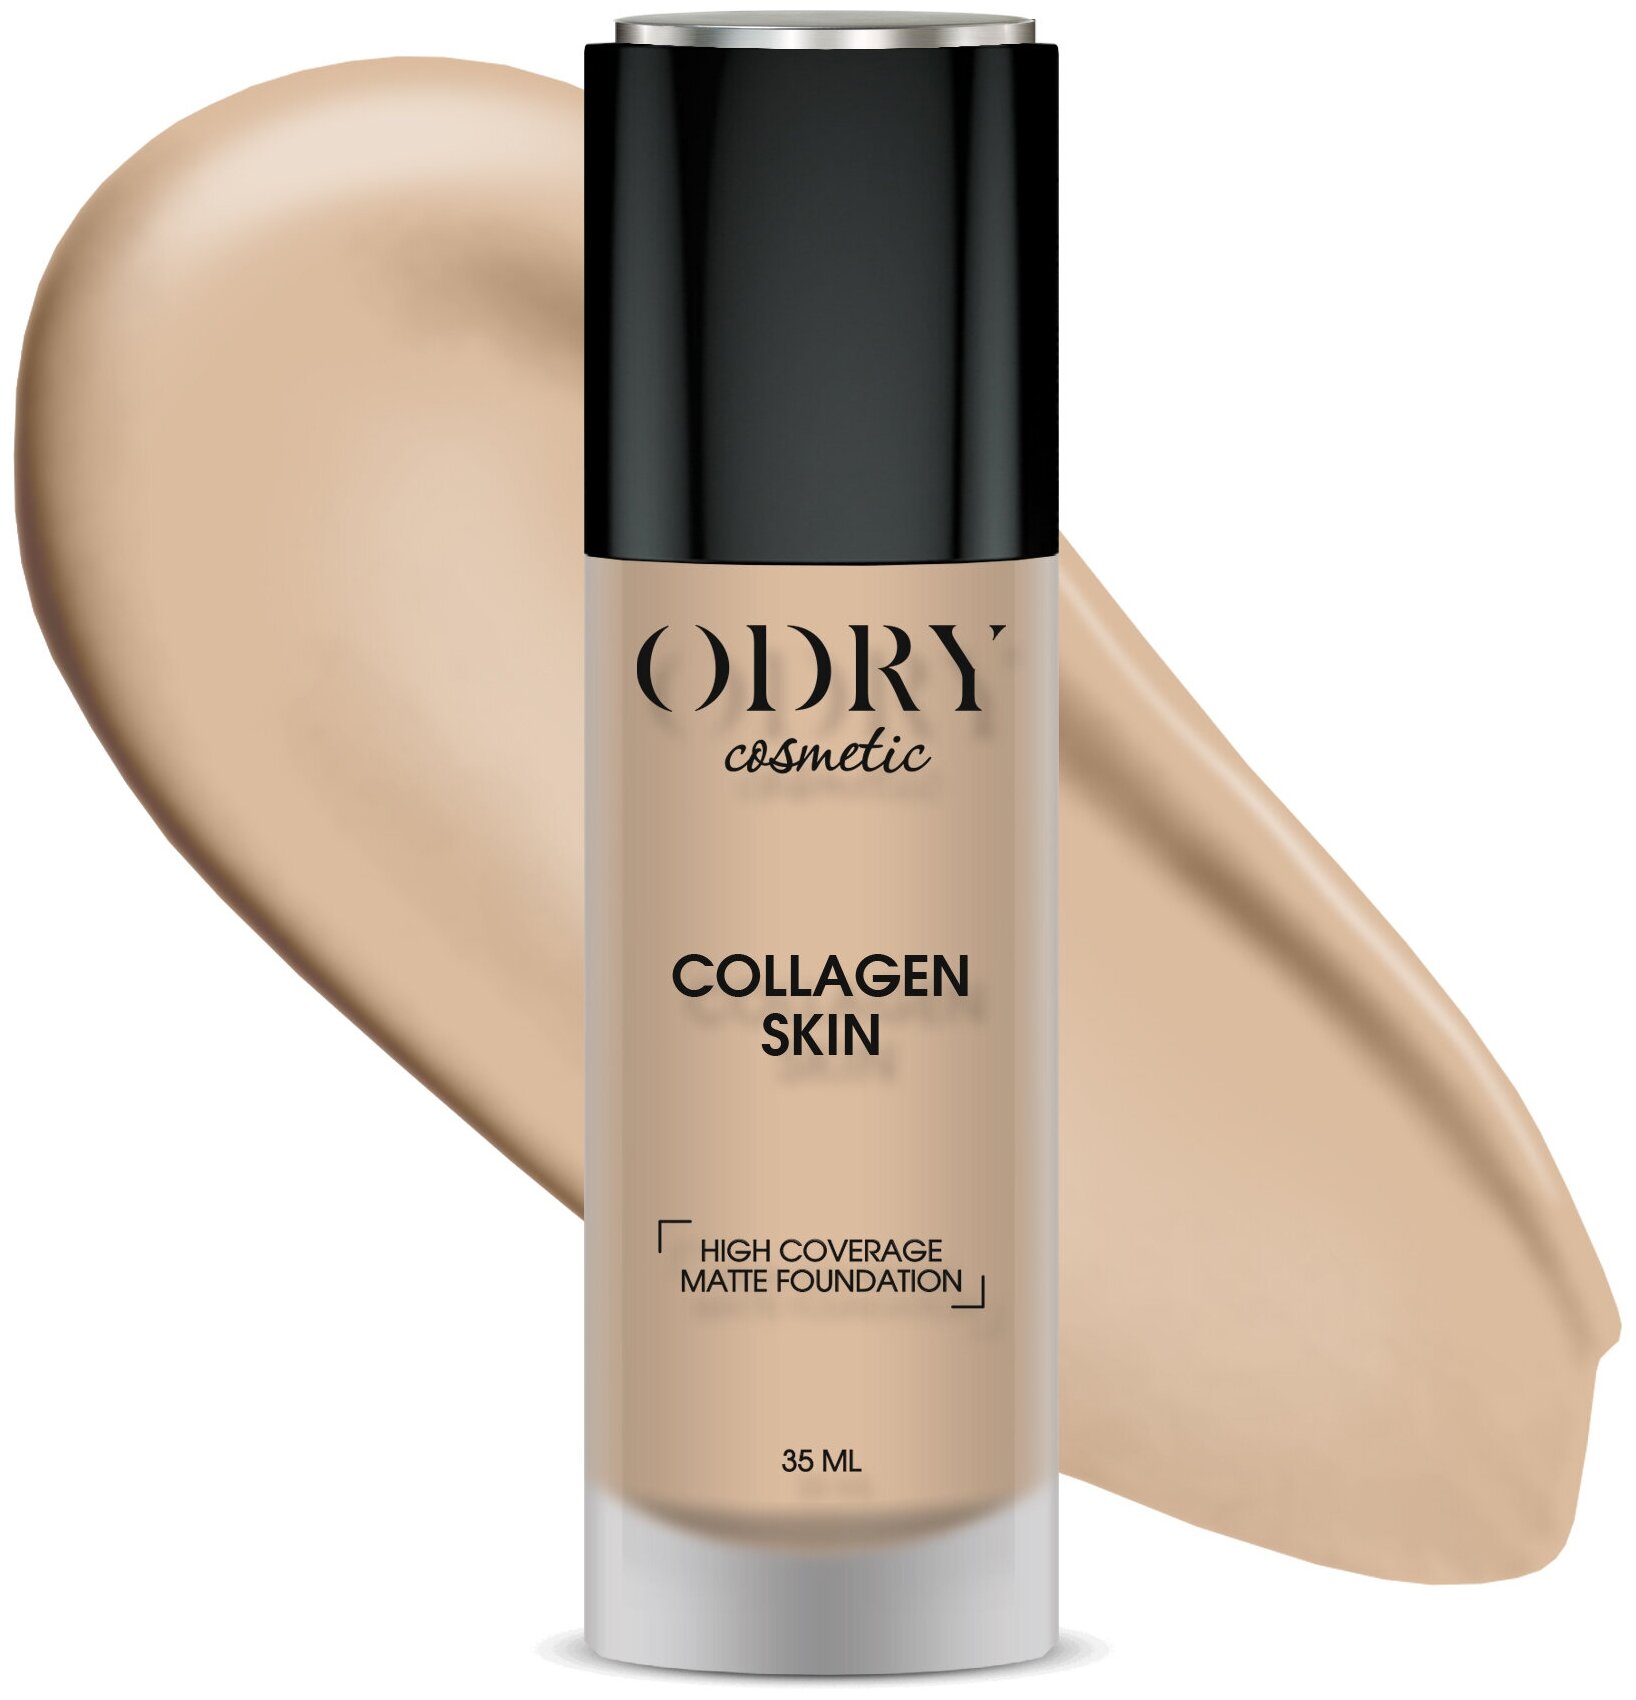 Тональный крем Odry Collagen skin, маскирующий с матовым финишем, оттенок: 03, 35мл